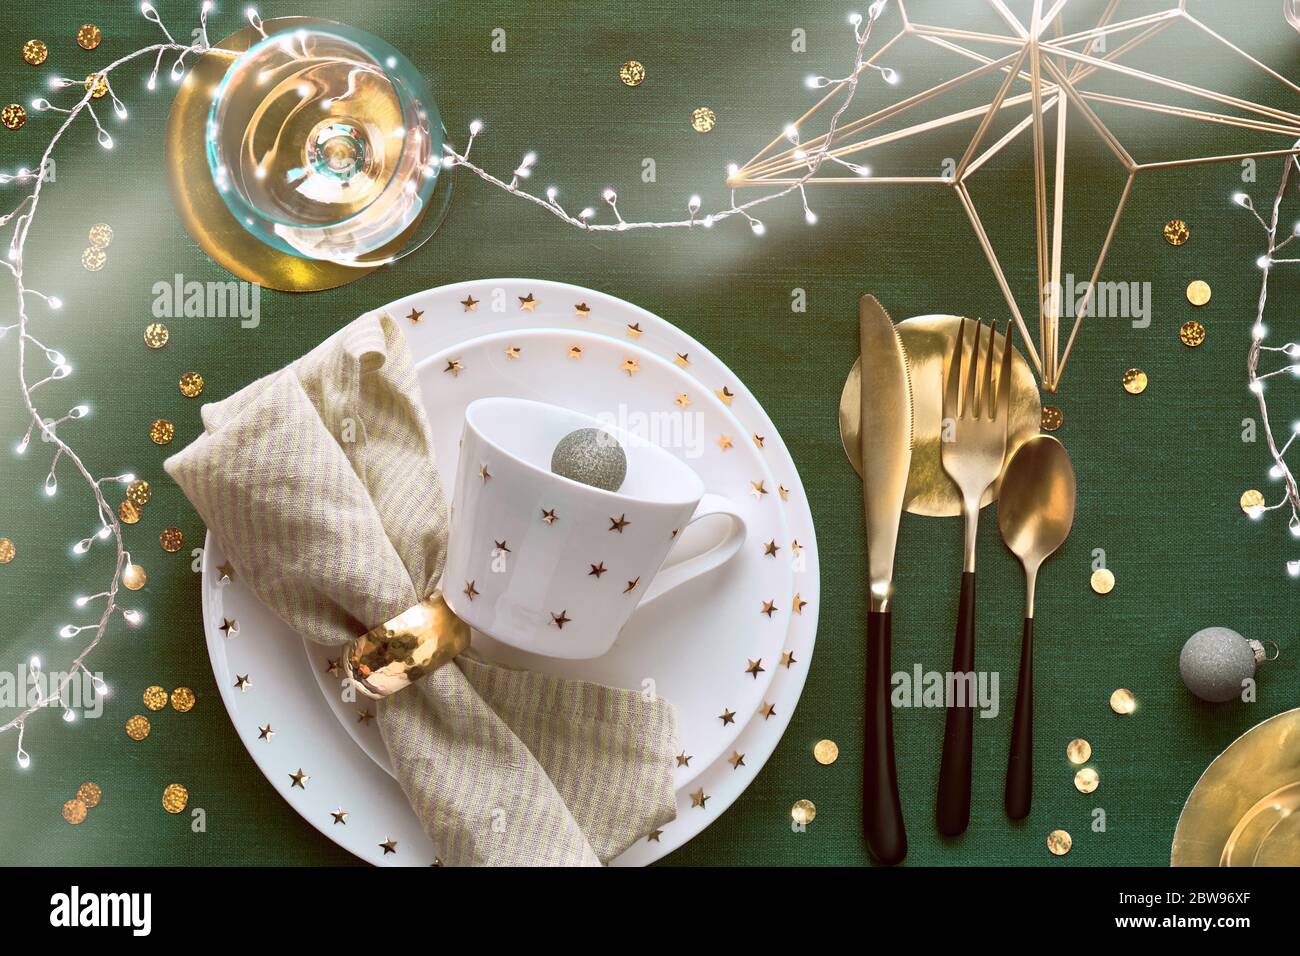 Tavolo natalizio con piatto bianco, utensili dorati e decorazioni dorate. Disposizione piatta, vista dall'alto su sfondo in tessuto di lino verde scuro. Luci natalizie Foto Stock